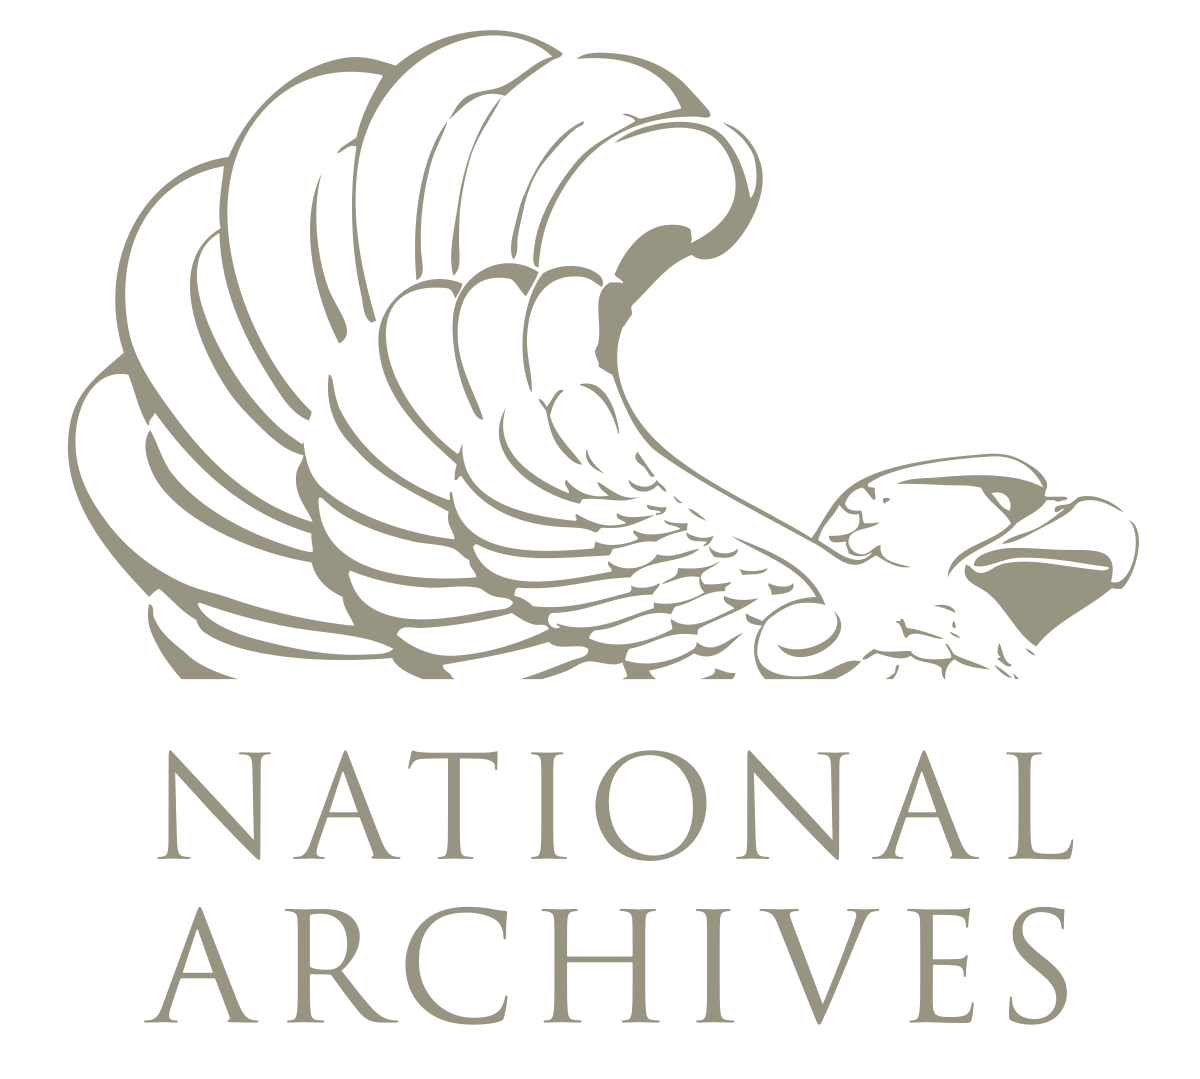 Archivos Nacionales y Administración - Wikipedia, la enciclopedia libre